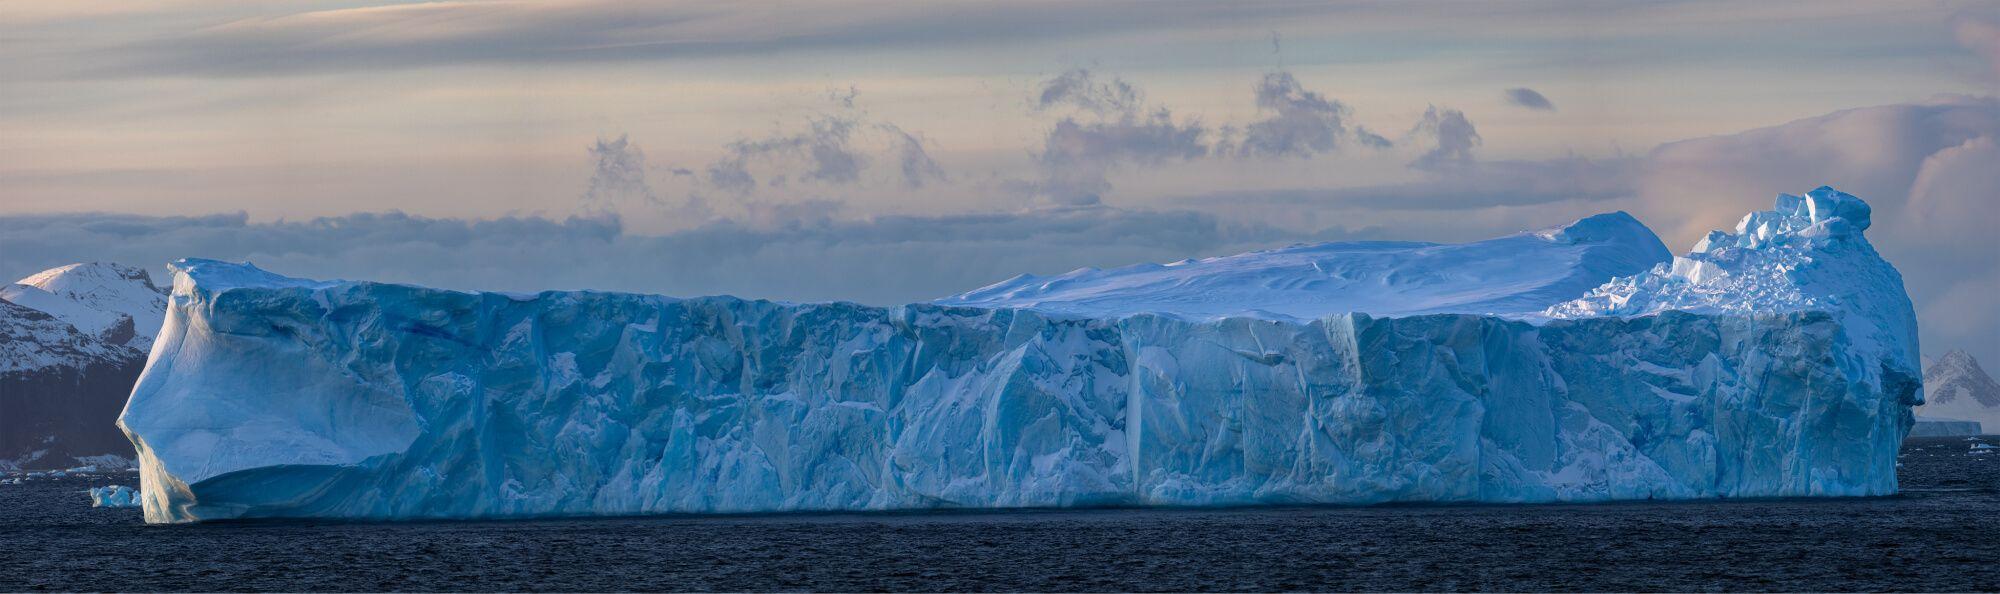 Glacial Antarctica.  Photographer: Artem Shestakov. Location: Antarctica.